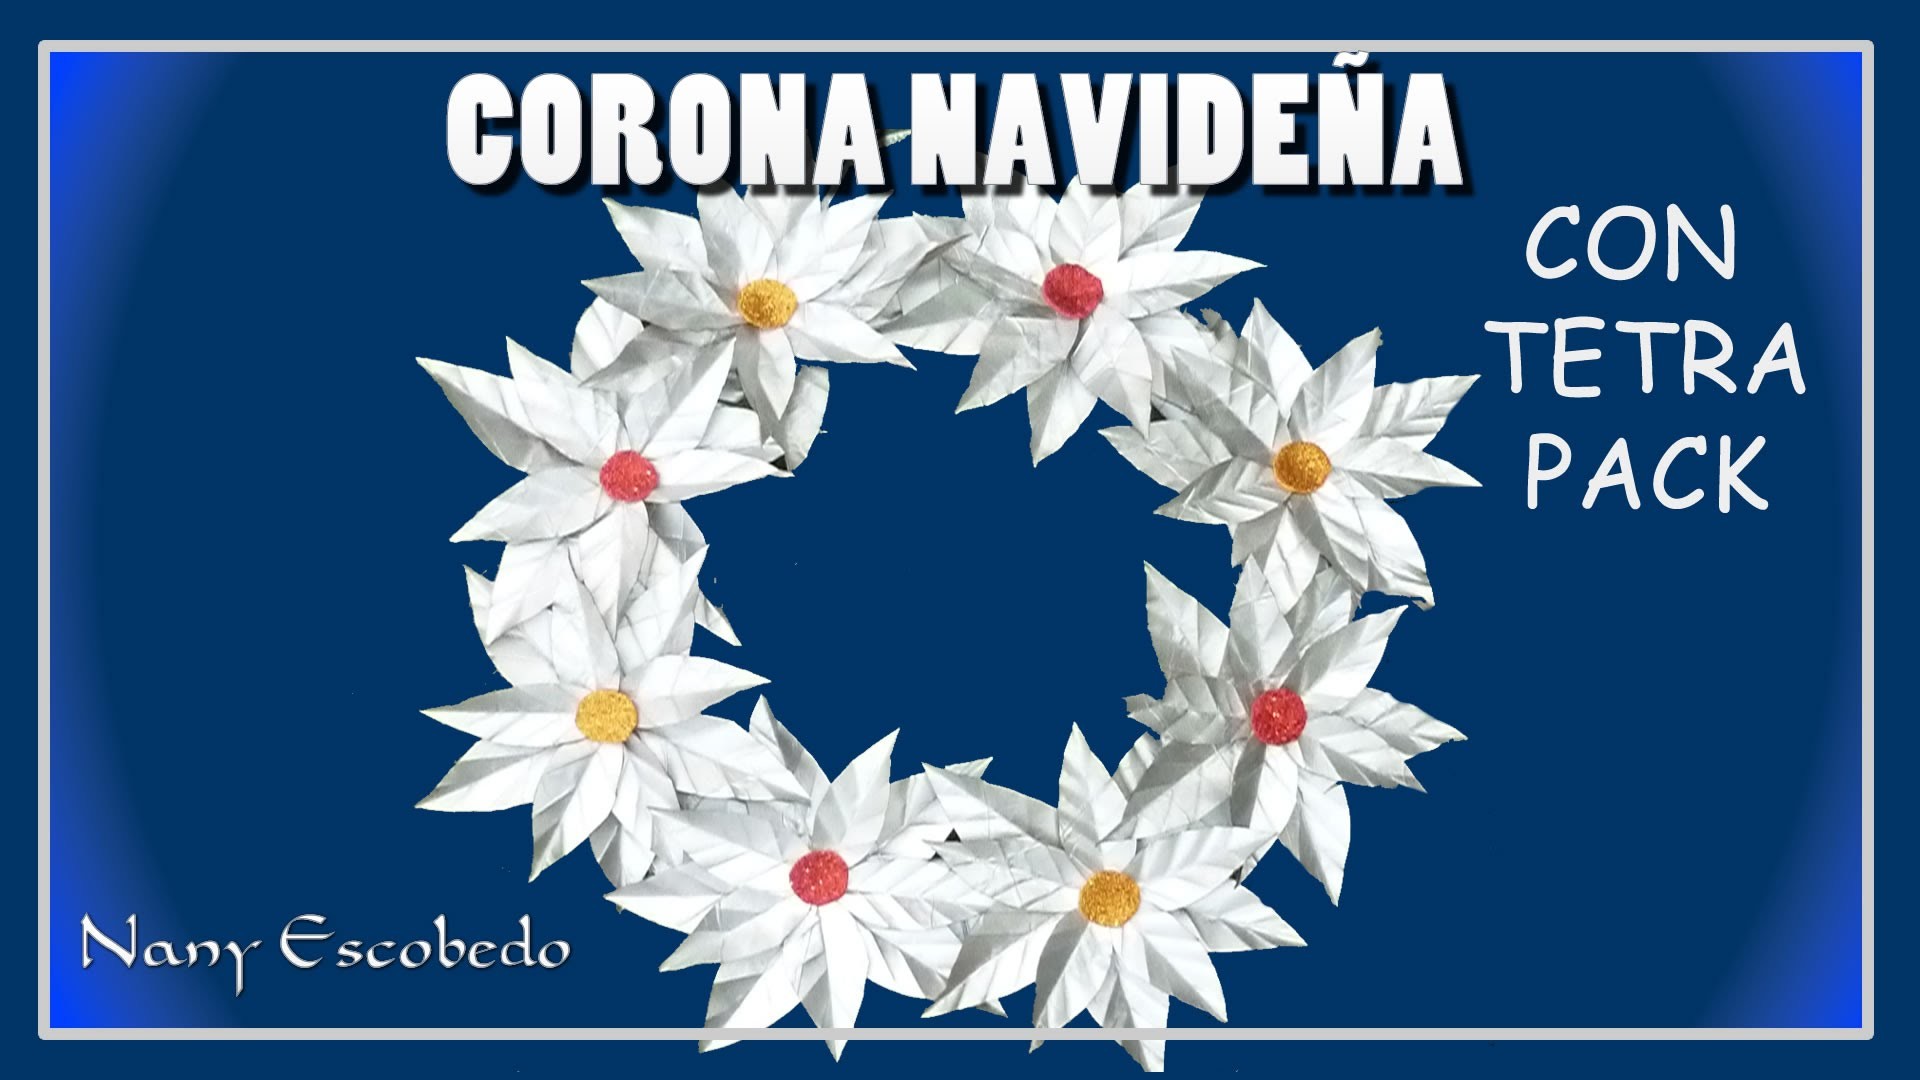 CORONA NAVIDEÑA CON TETRA PACK. Christmas wreath